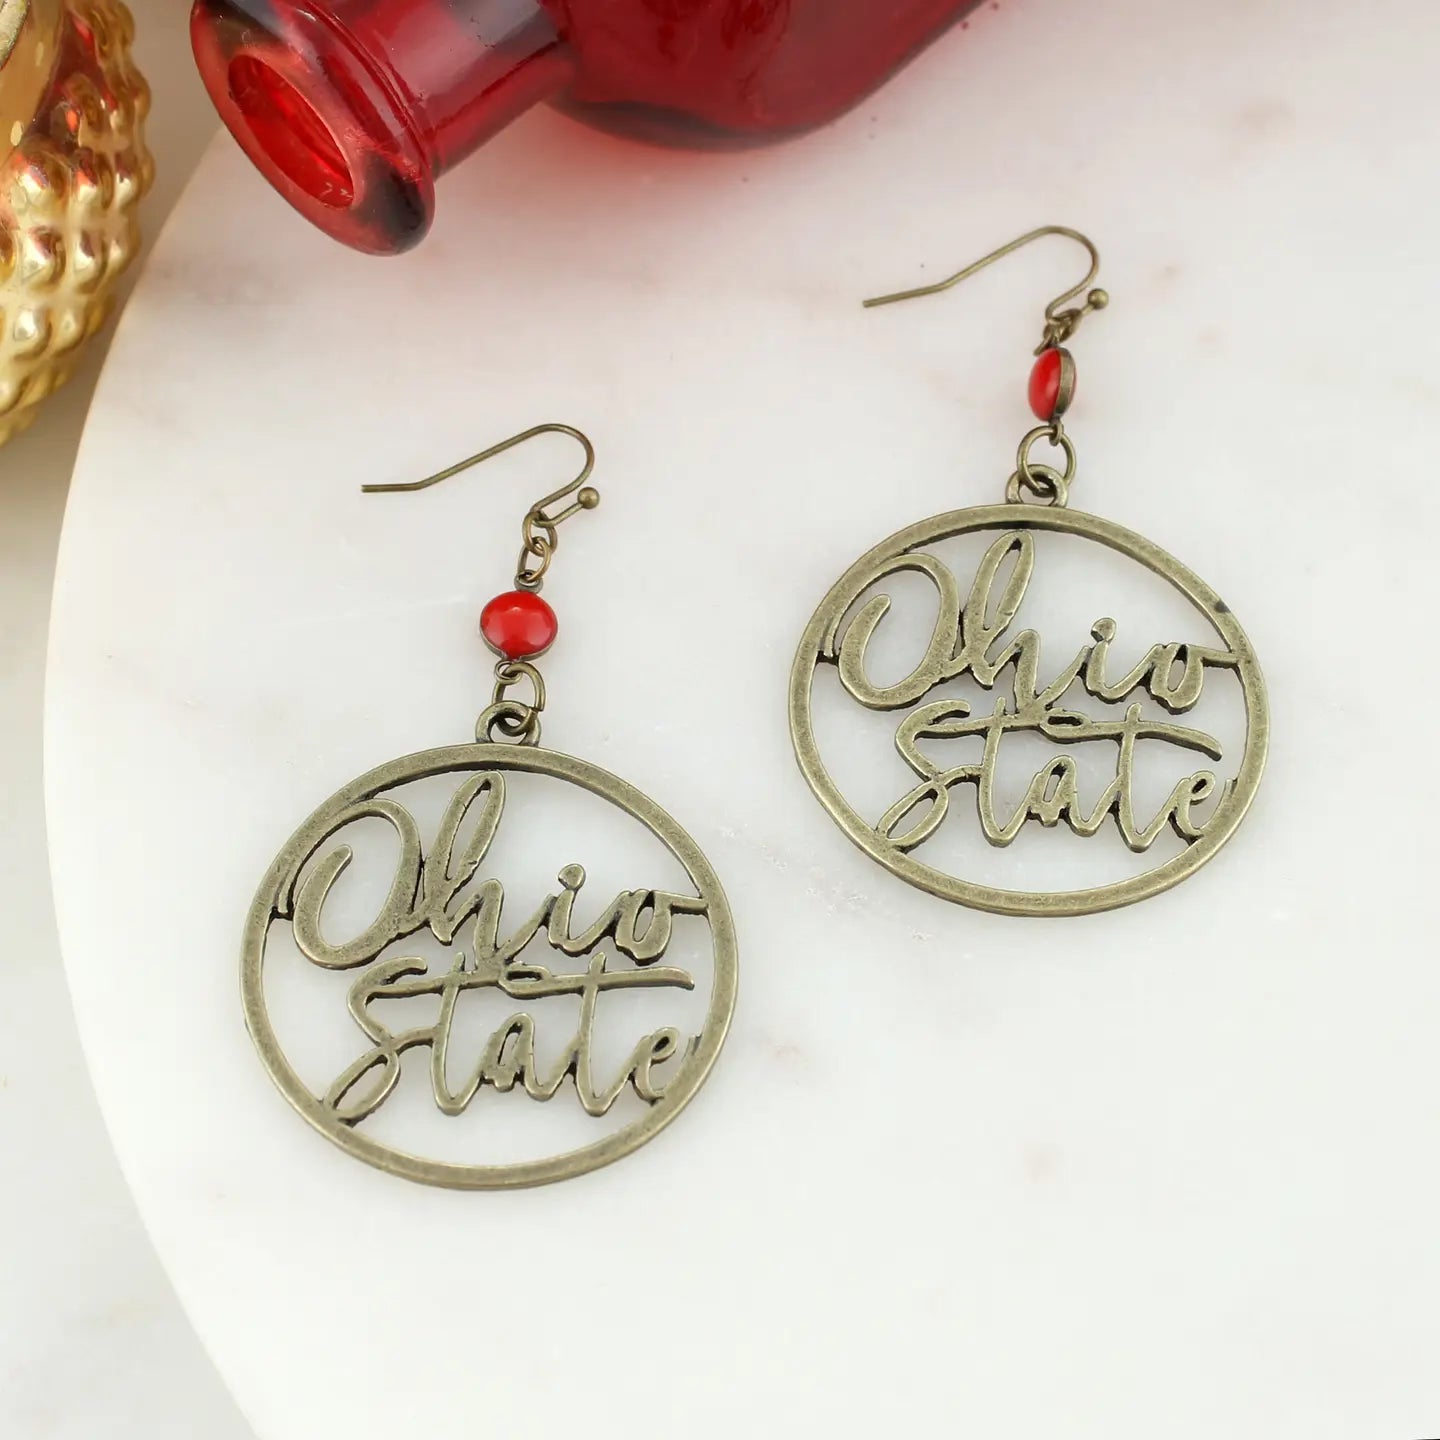 loop Shepherd hook earrings featuring the slogan “Ohio State